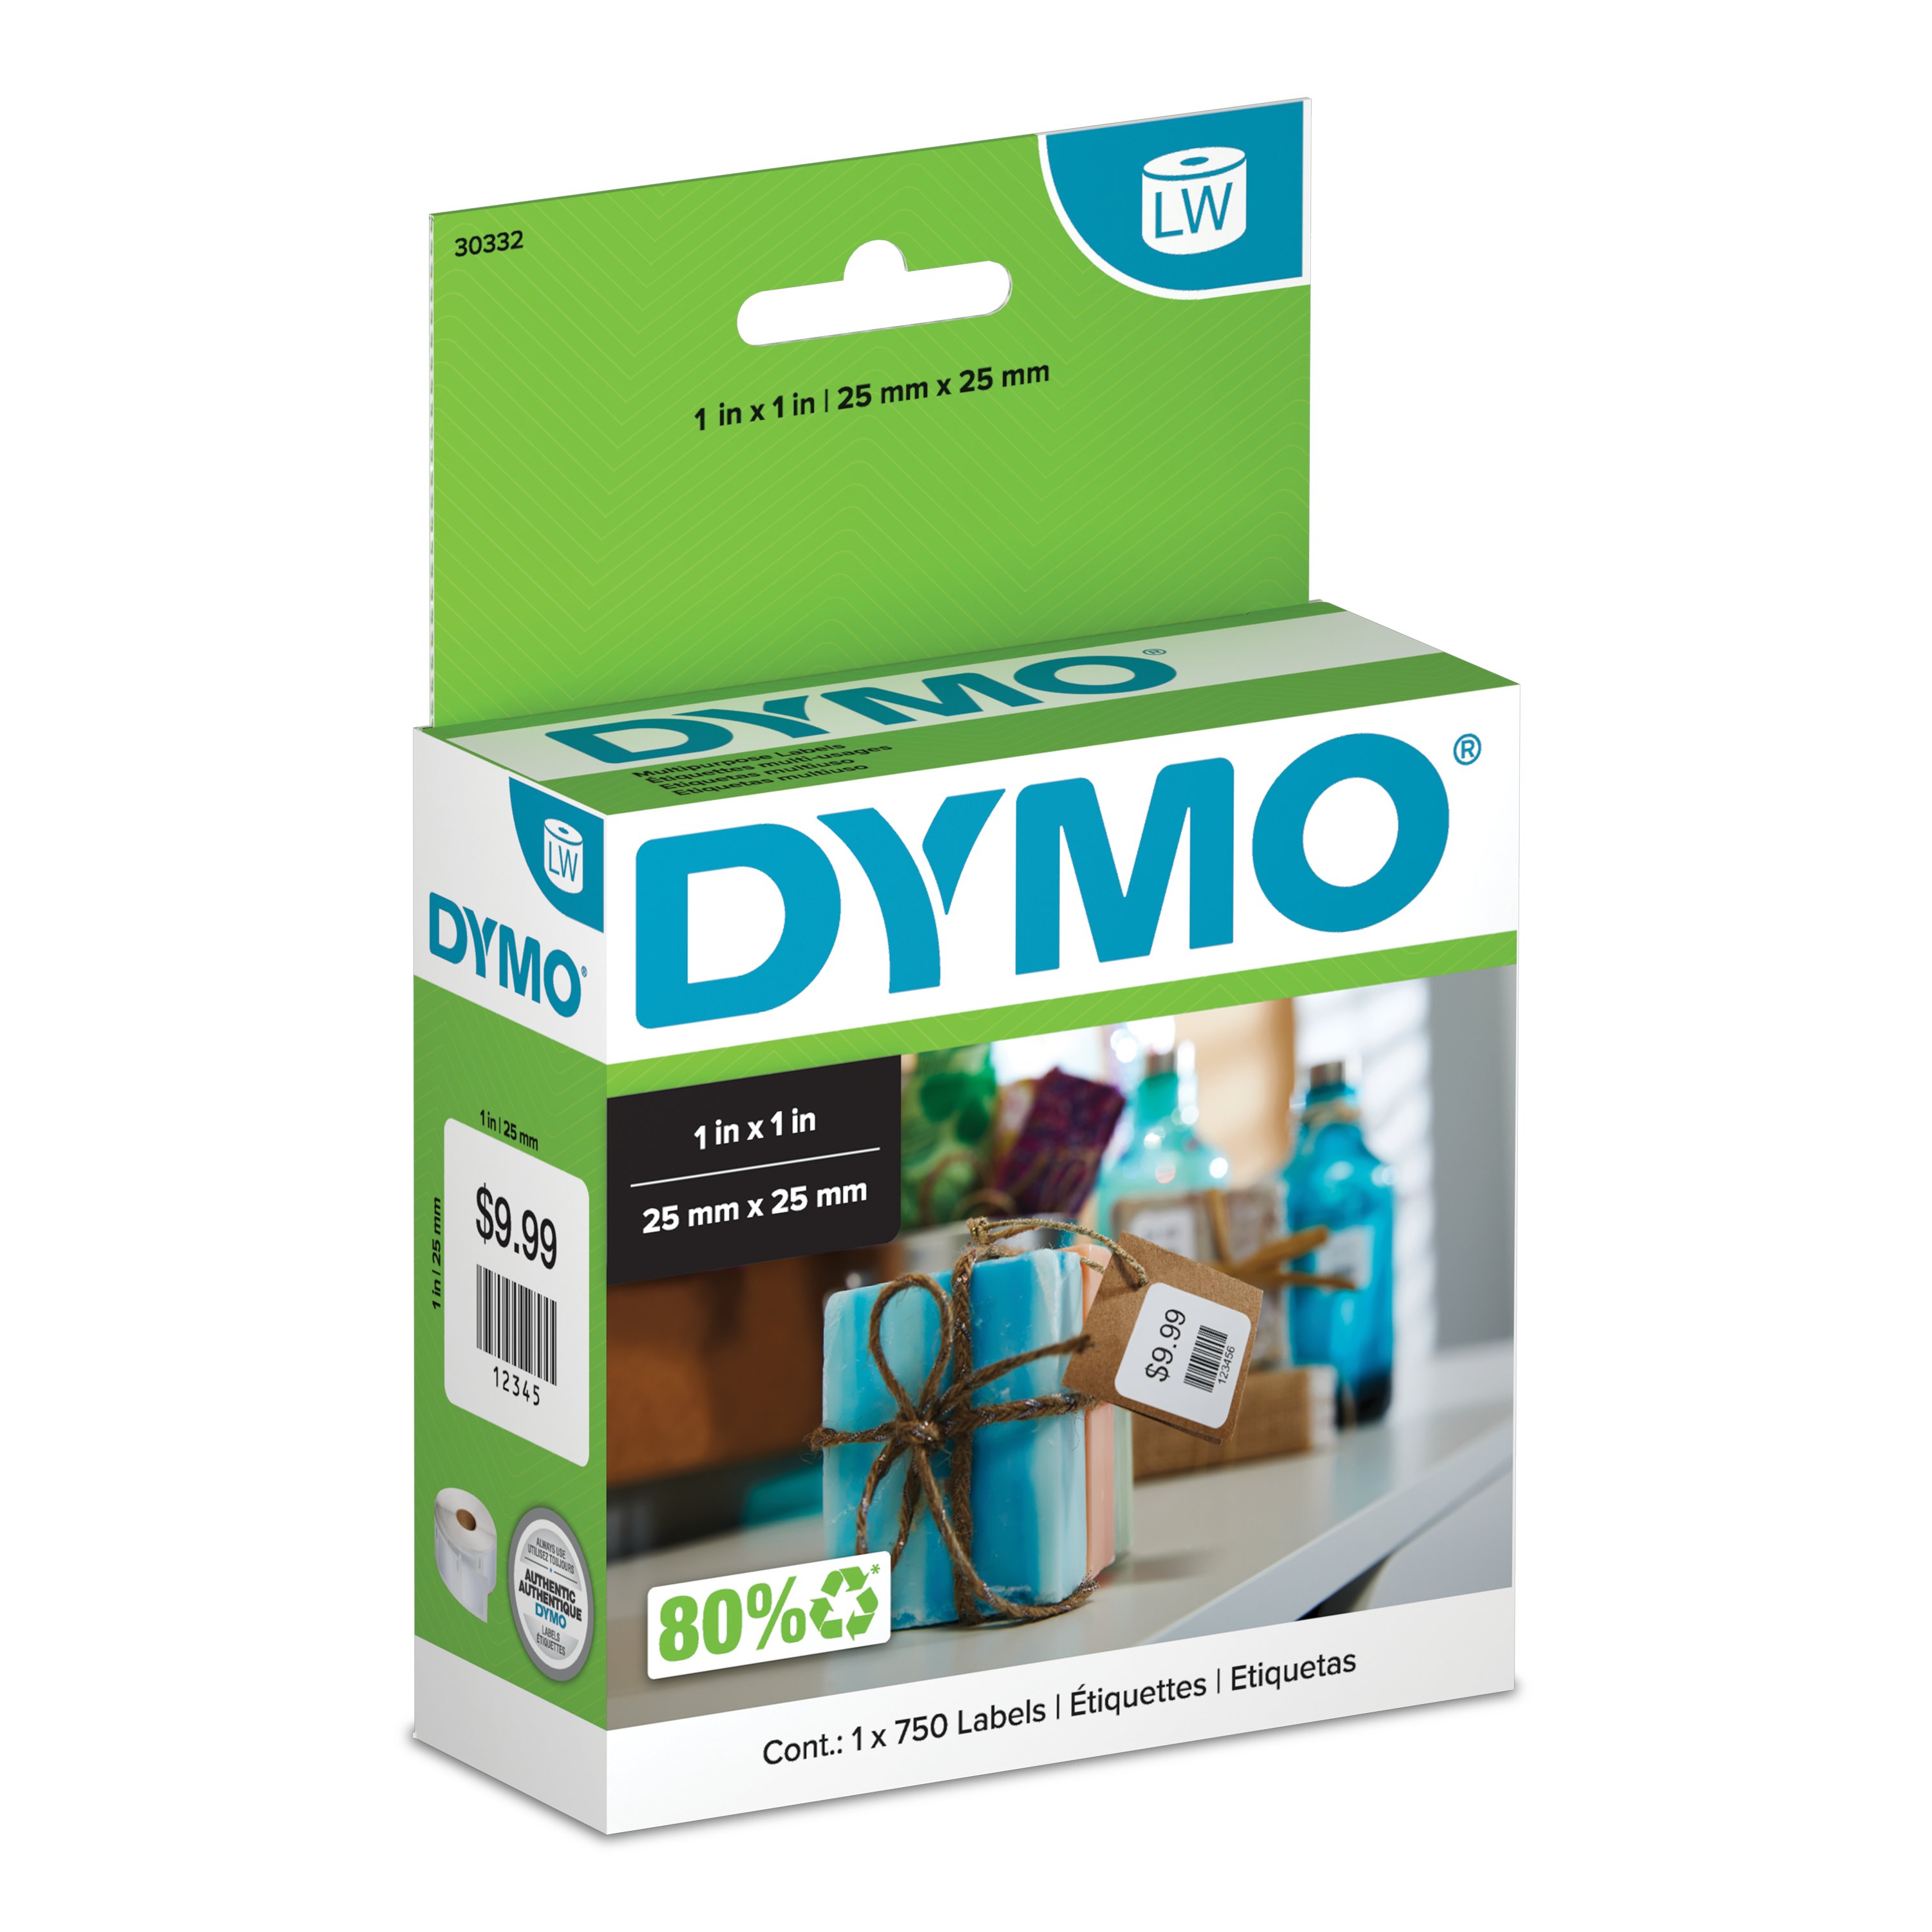 DYMO LM 160VP: Étiqueteuse DYMO portable, service clients : +49 69 999 915  354 chez reichelt elektronik